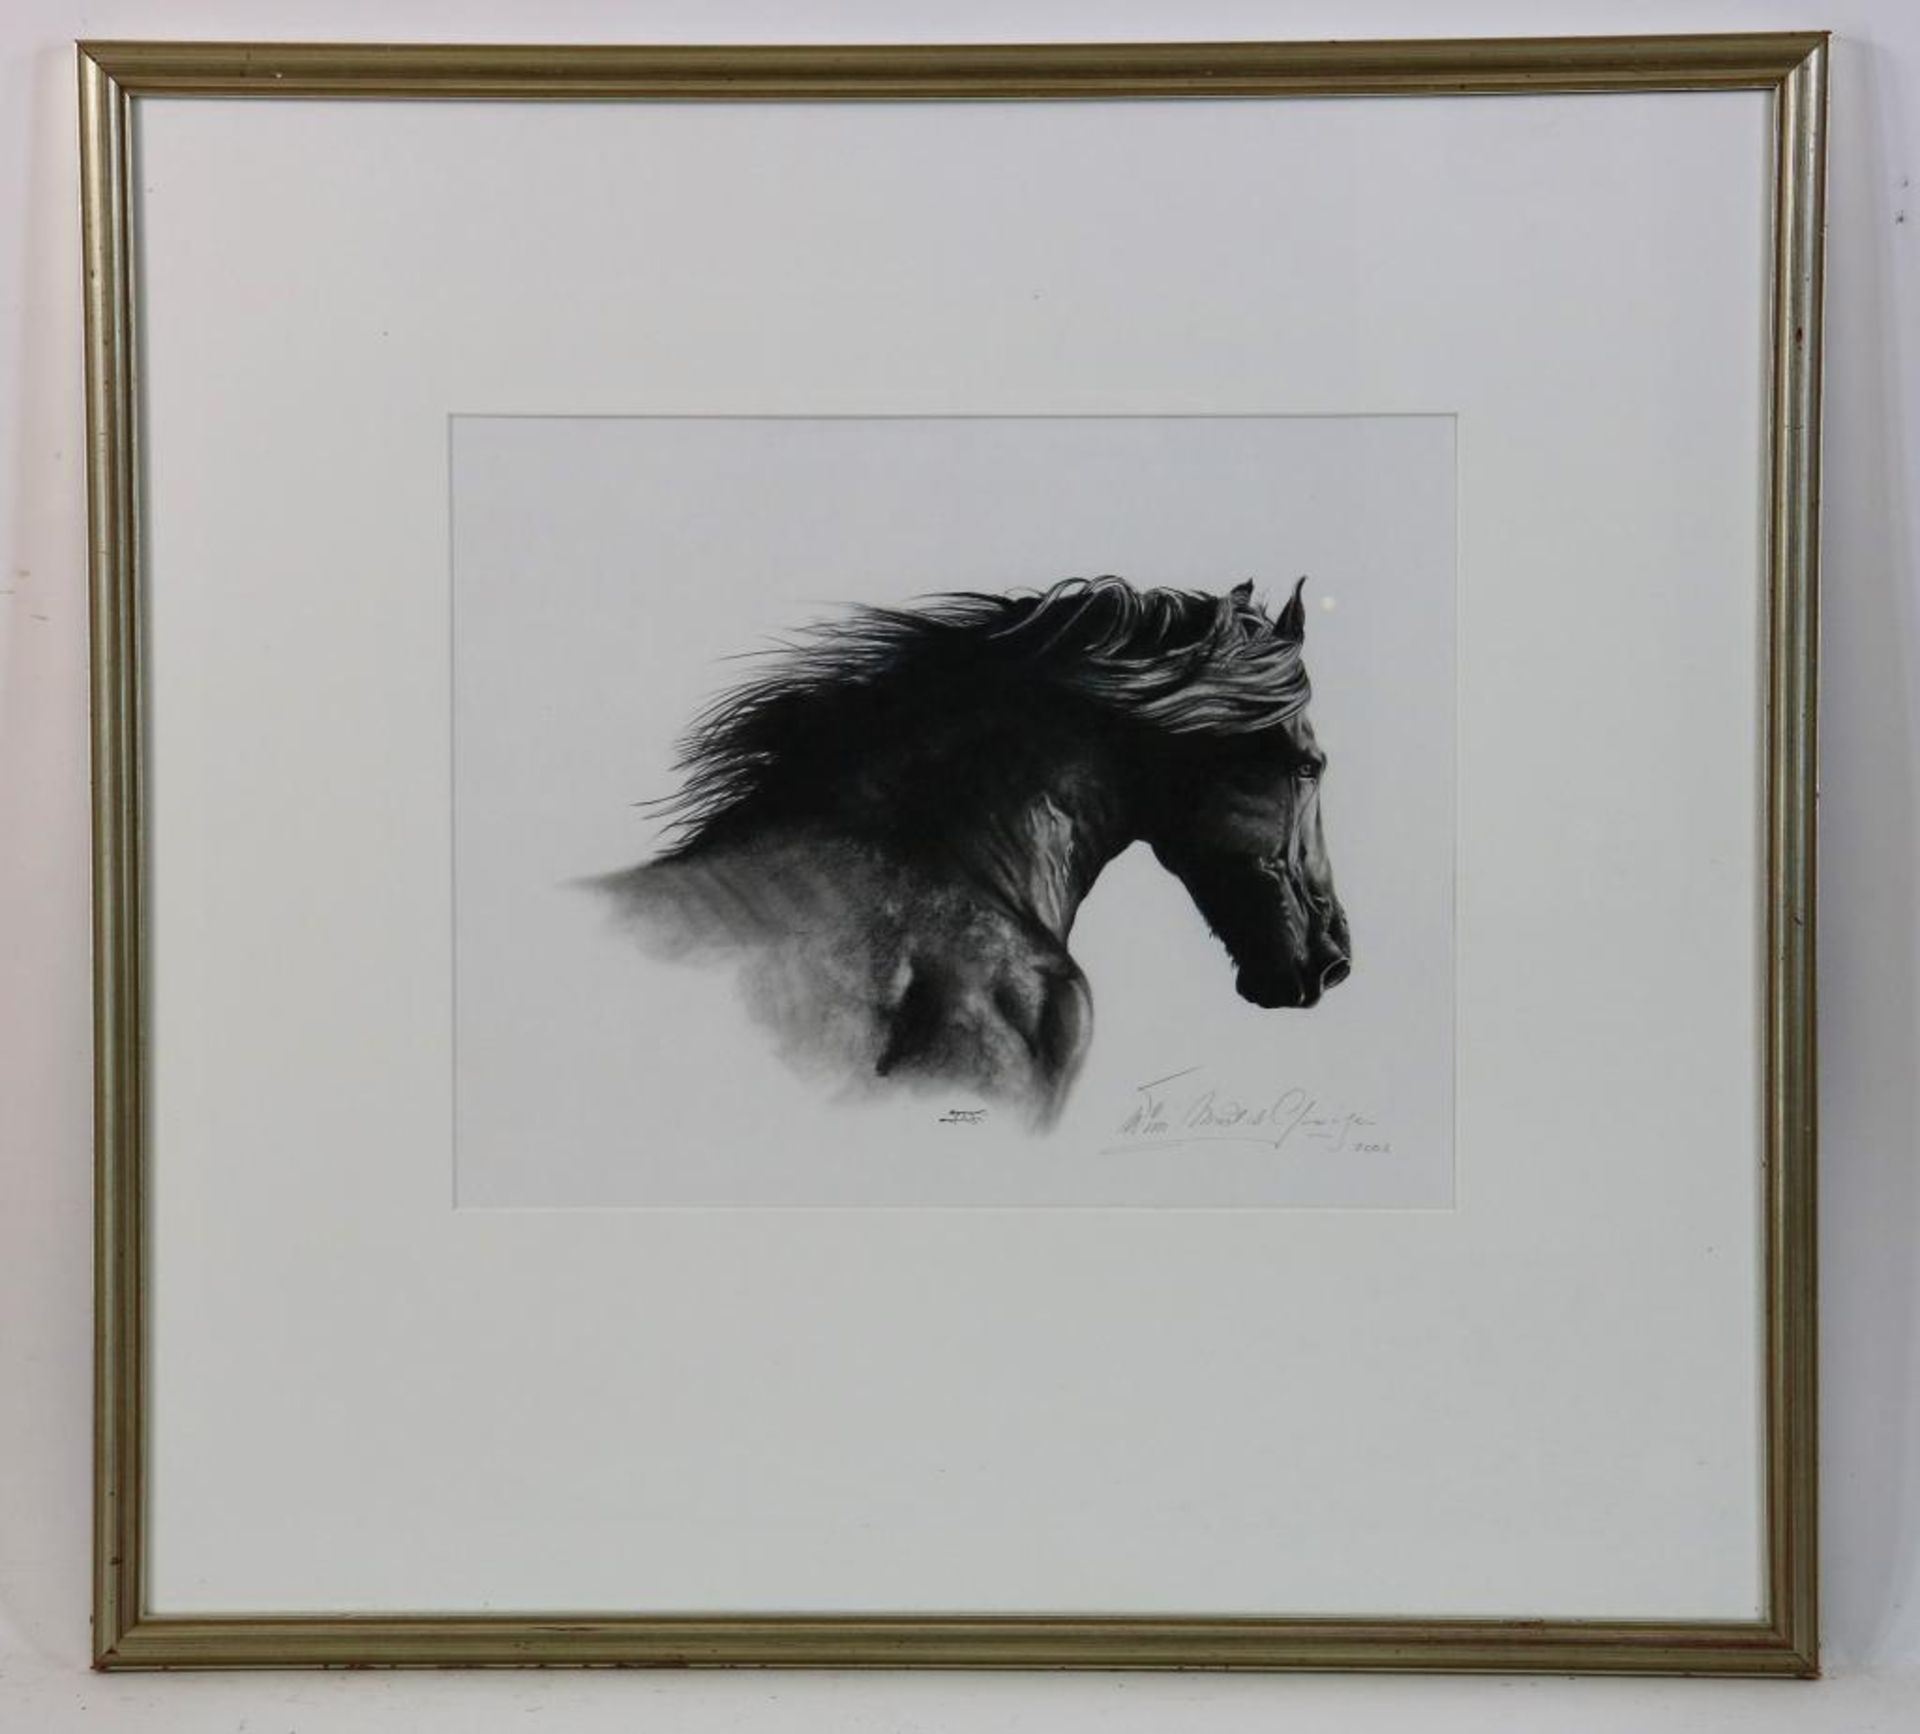 Gooijer, paardenhoofd, tekening - Bild 2 aus 4